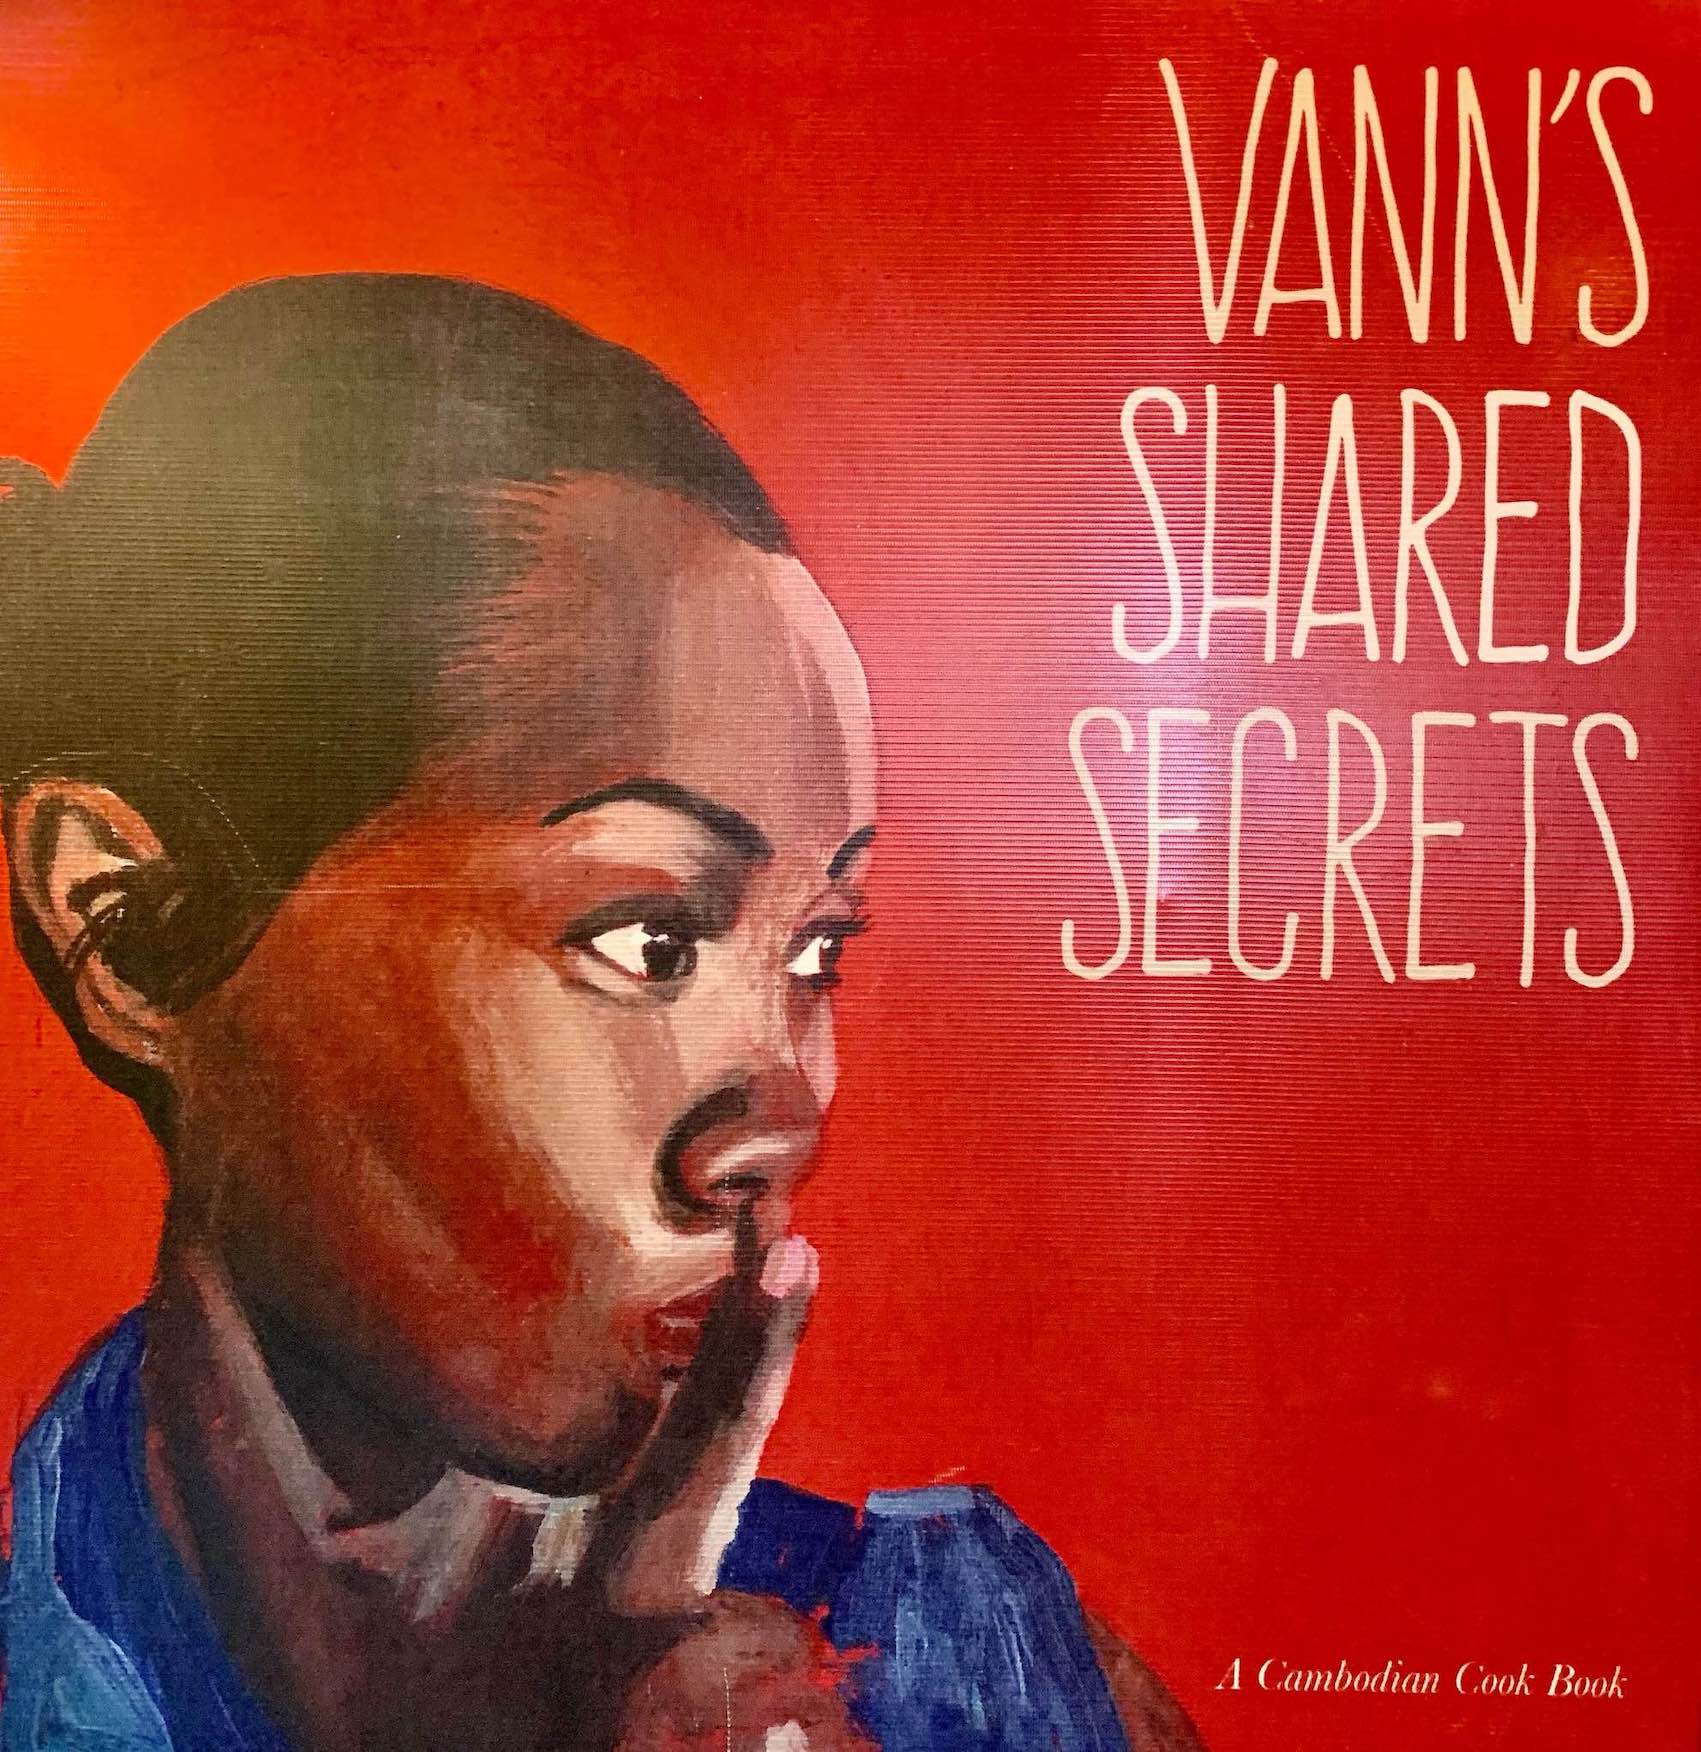 Vann's Shared Secrets a Cambodian Cookbook